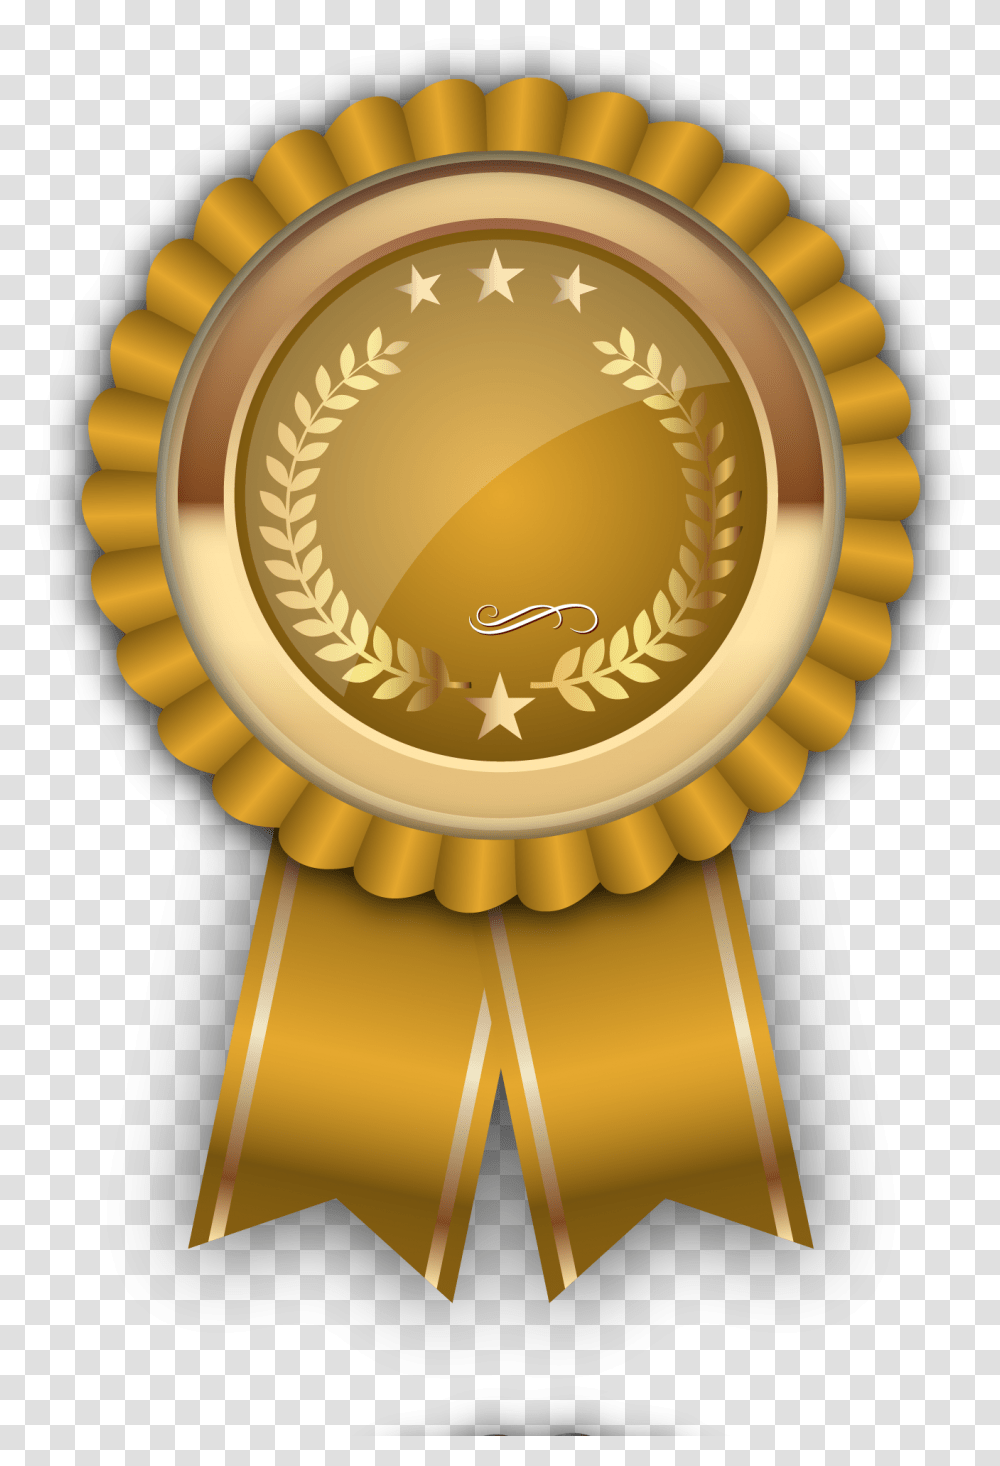 Free Download Vector Award Badge, Gold, Lamp, Gold Medal, Trophy Transparent Png